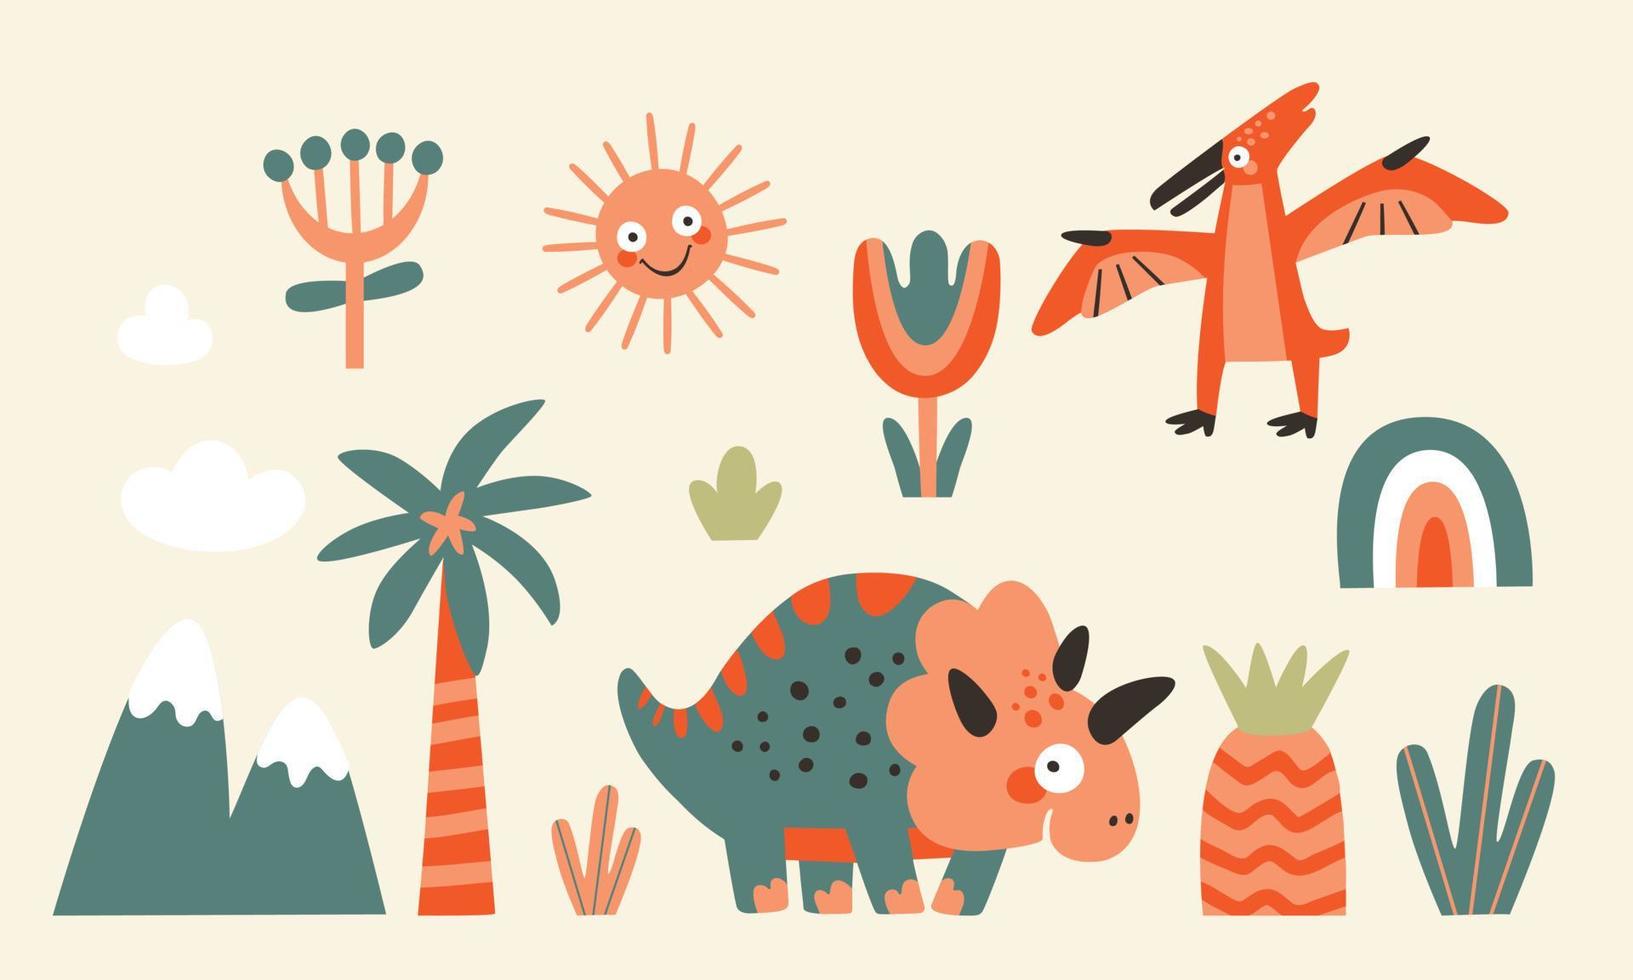 kinderachtige illustraties van dieren en planten in een cartoon-stijl. vector